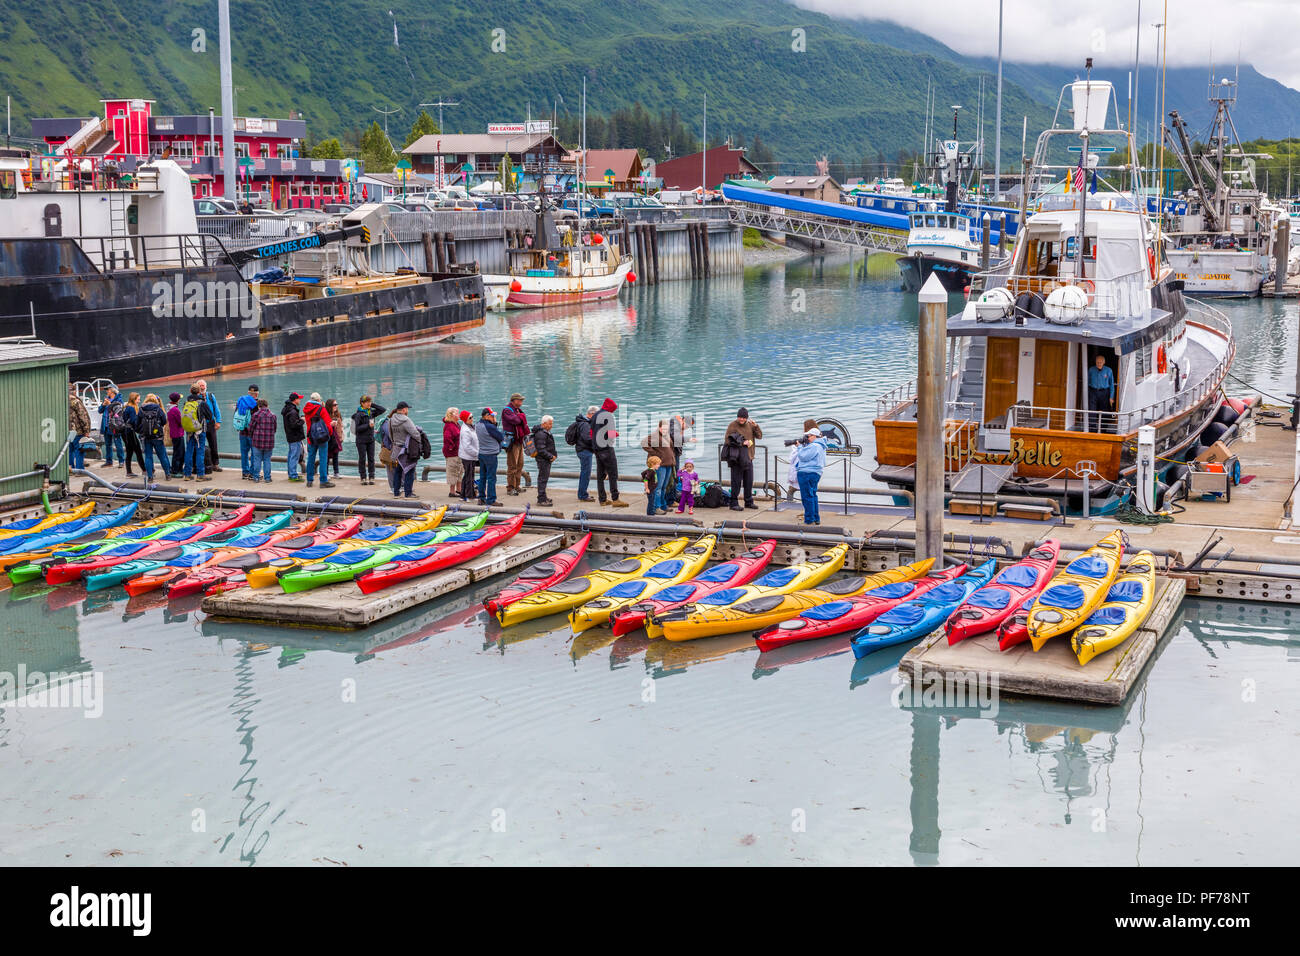 People lined up on dock for glacier boat tour in Valdez Alaska Stock Photo